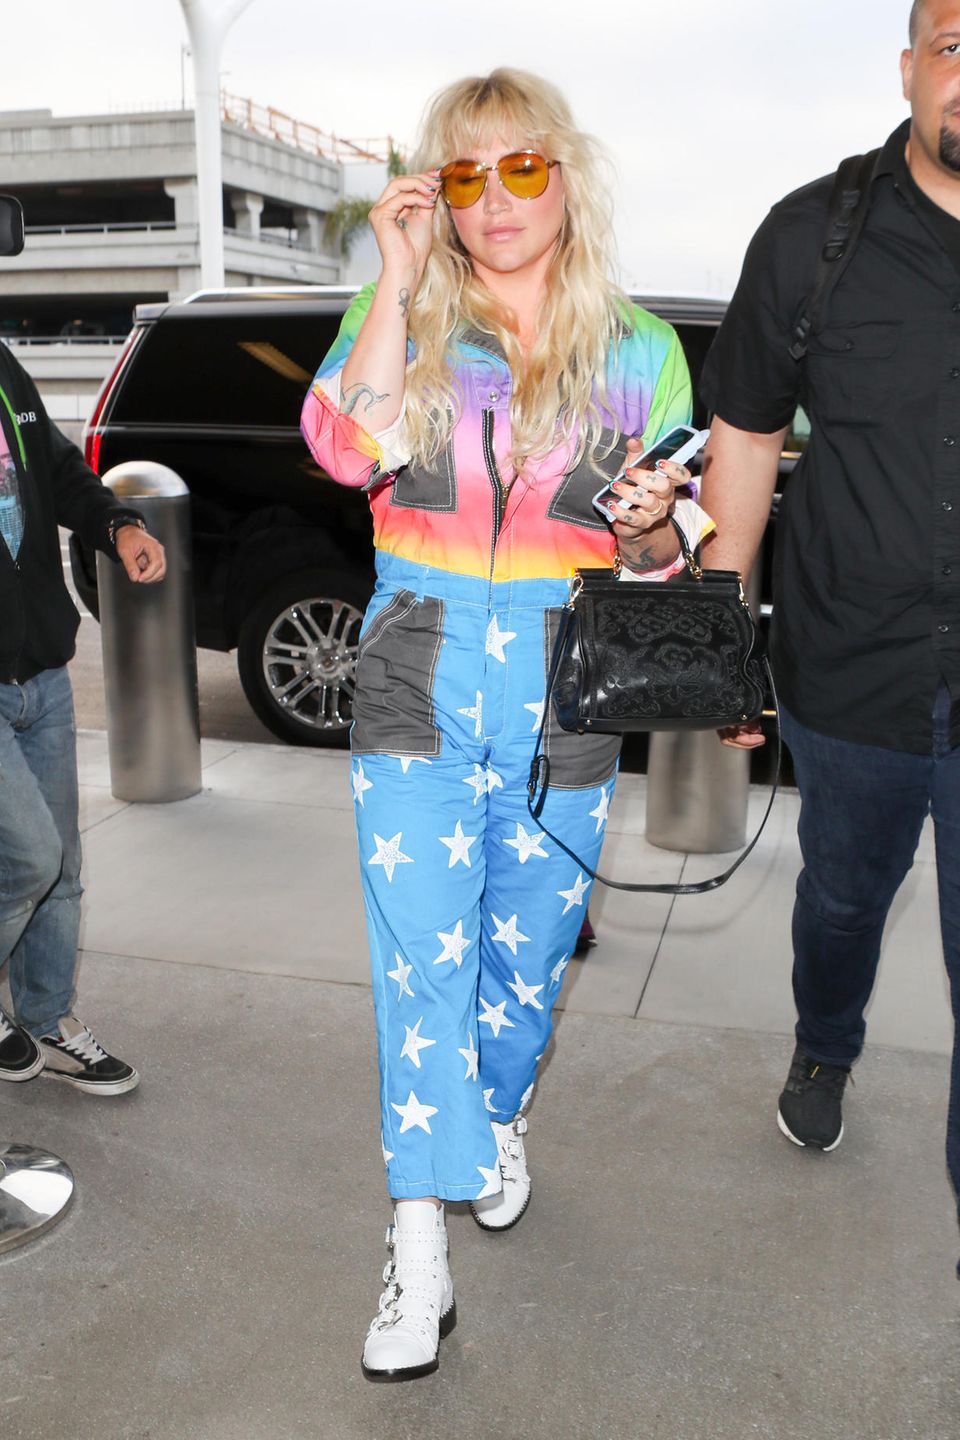 Auweia, was ist das nur für ein Overall, den Kesha hier am Flughafen trägt?! Da kann man nur hoffen, dass die Sicherheitsleute sie nicht weitergehen lassen und ihr den Rainbow-Space-Anzug direkt abnehmen.